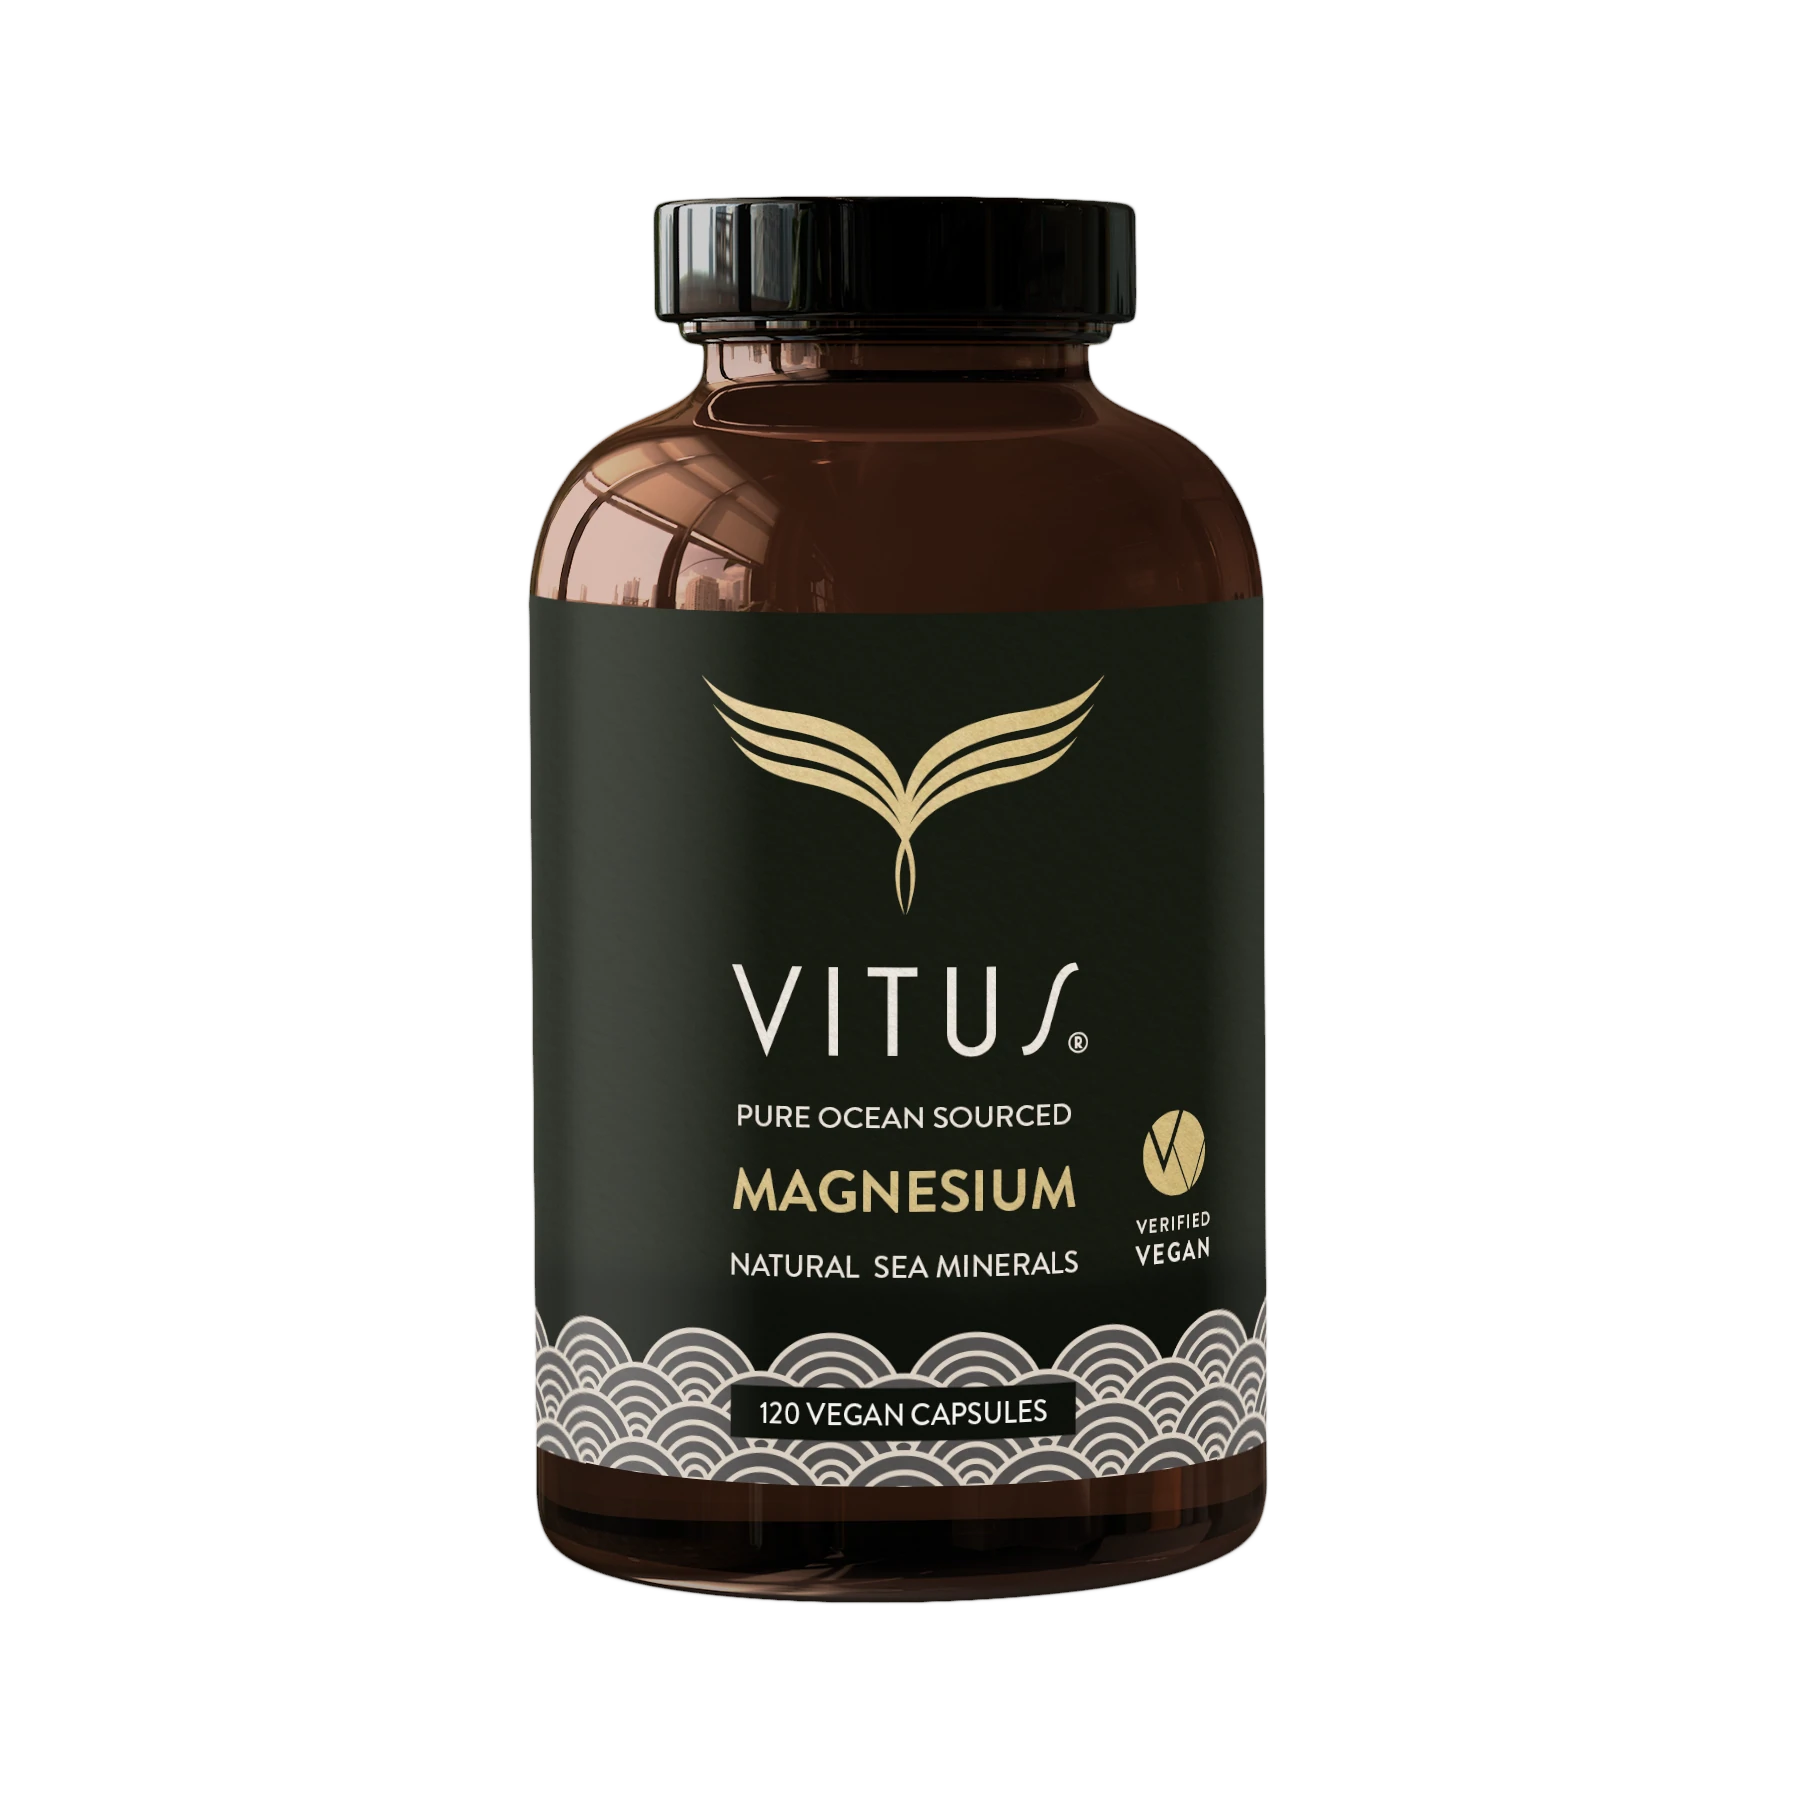 VITUS Magnesium Vegan Capsules